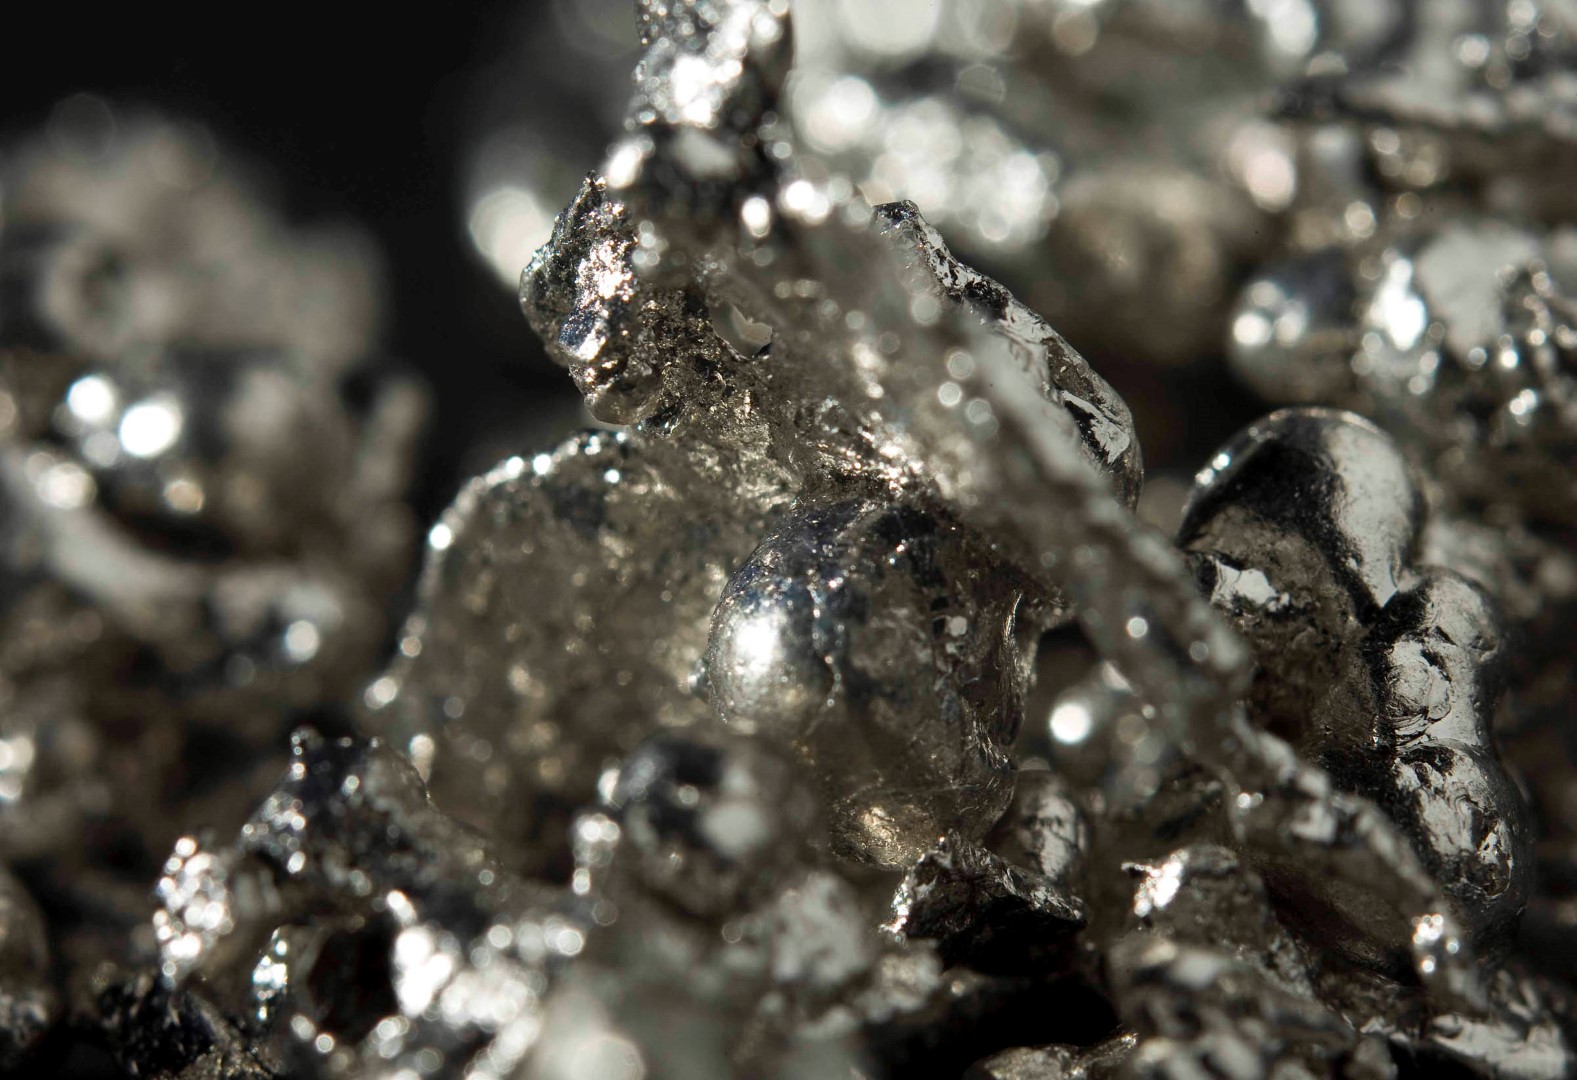 Российские ученые синтезировали новые противомикробные соединения платины